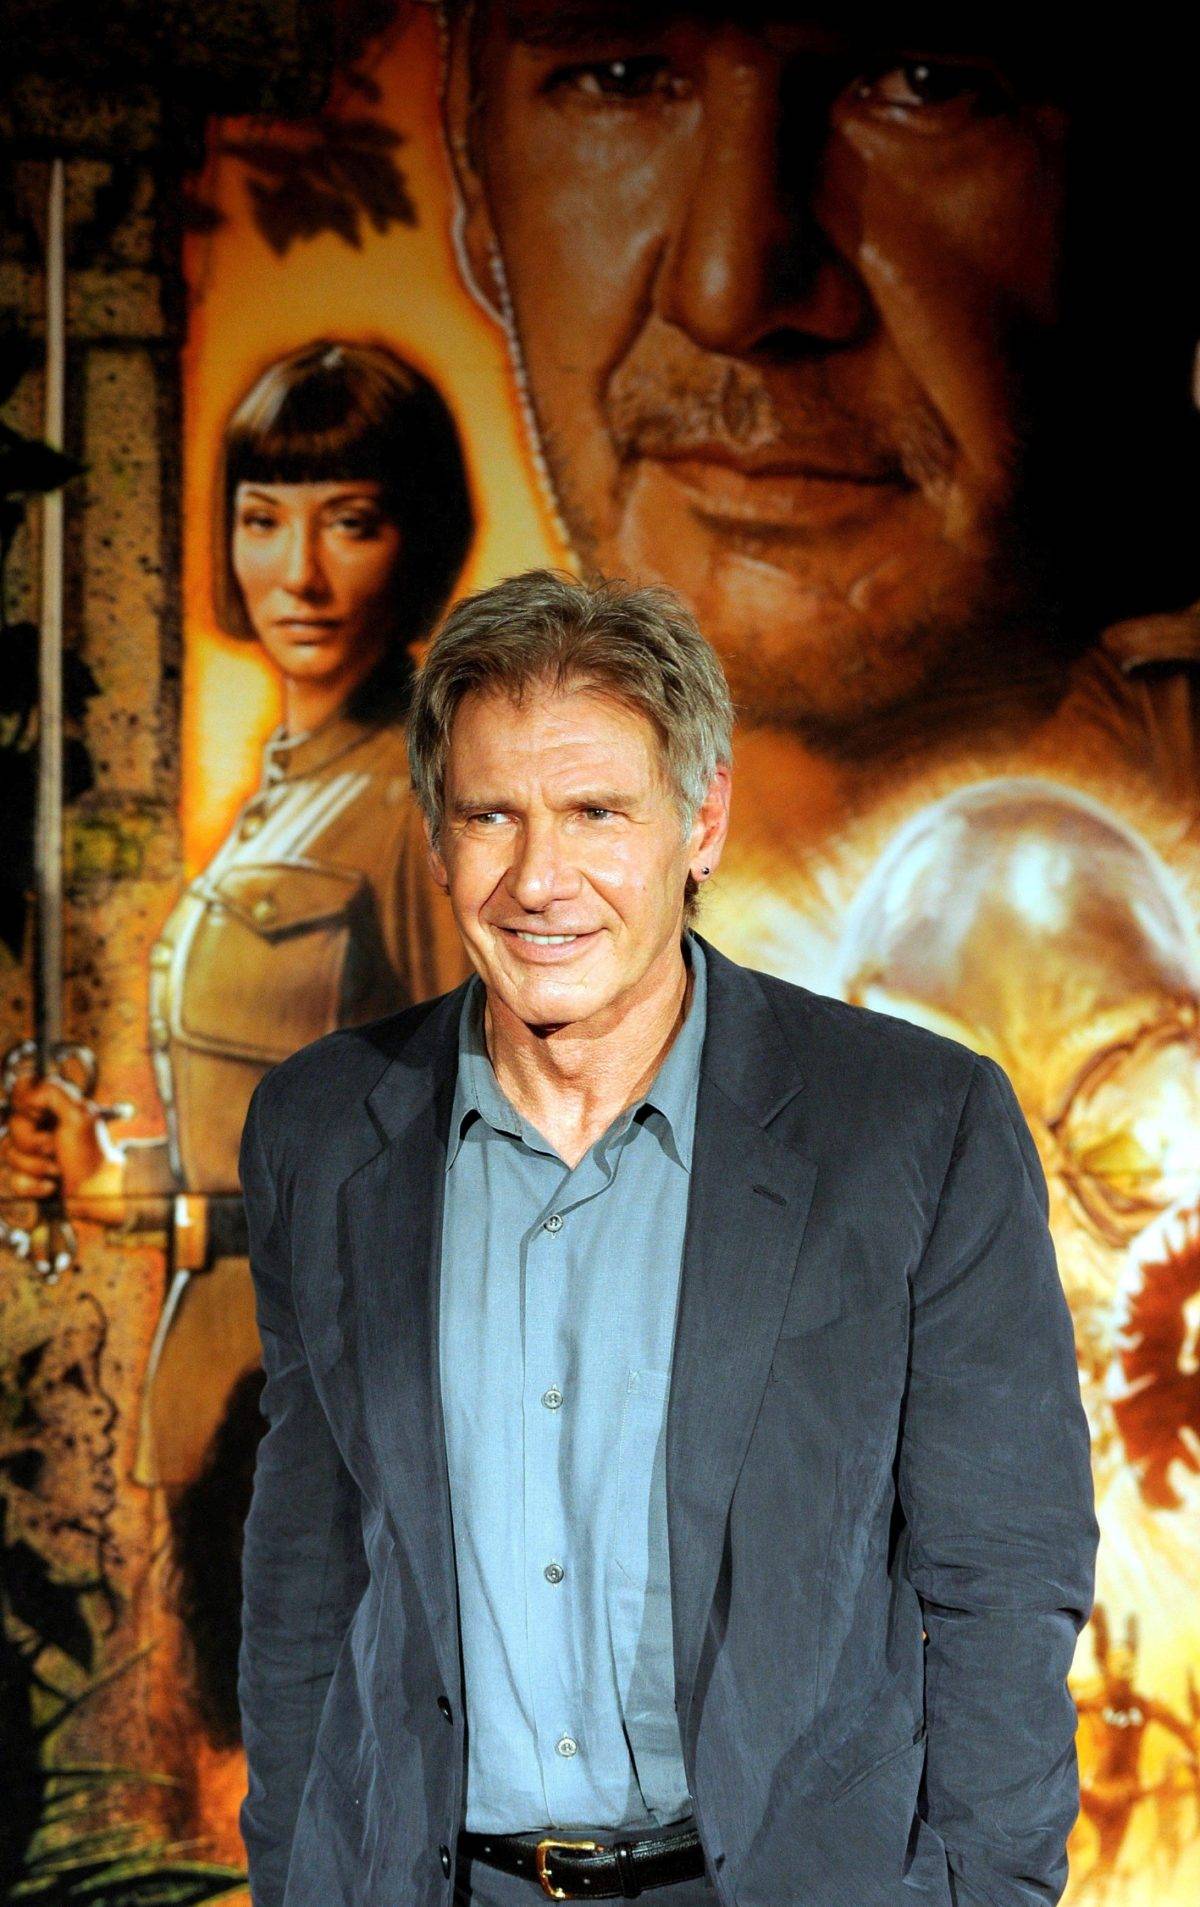 Vuelve Indiana Jones curiosidades sobre la saga